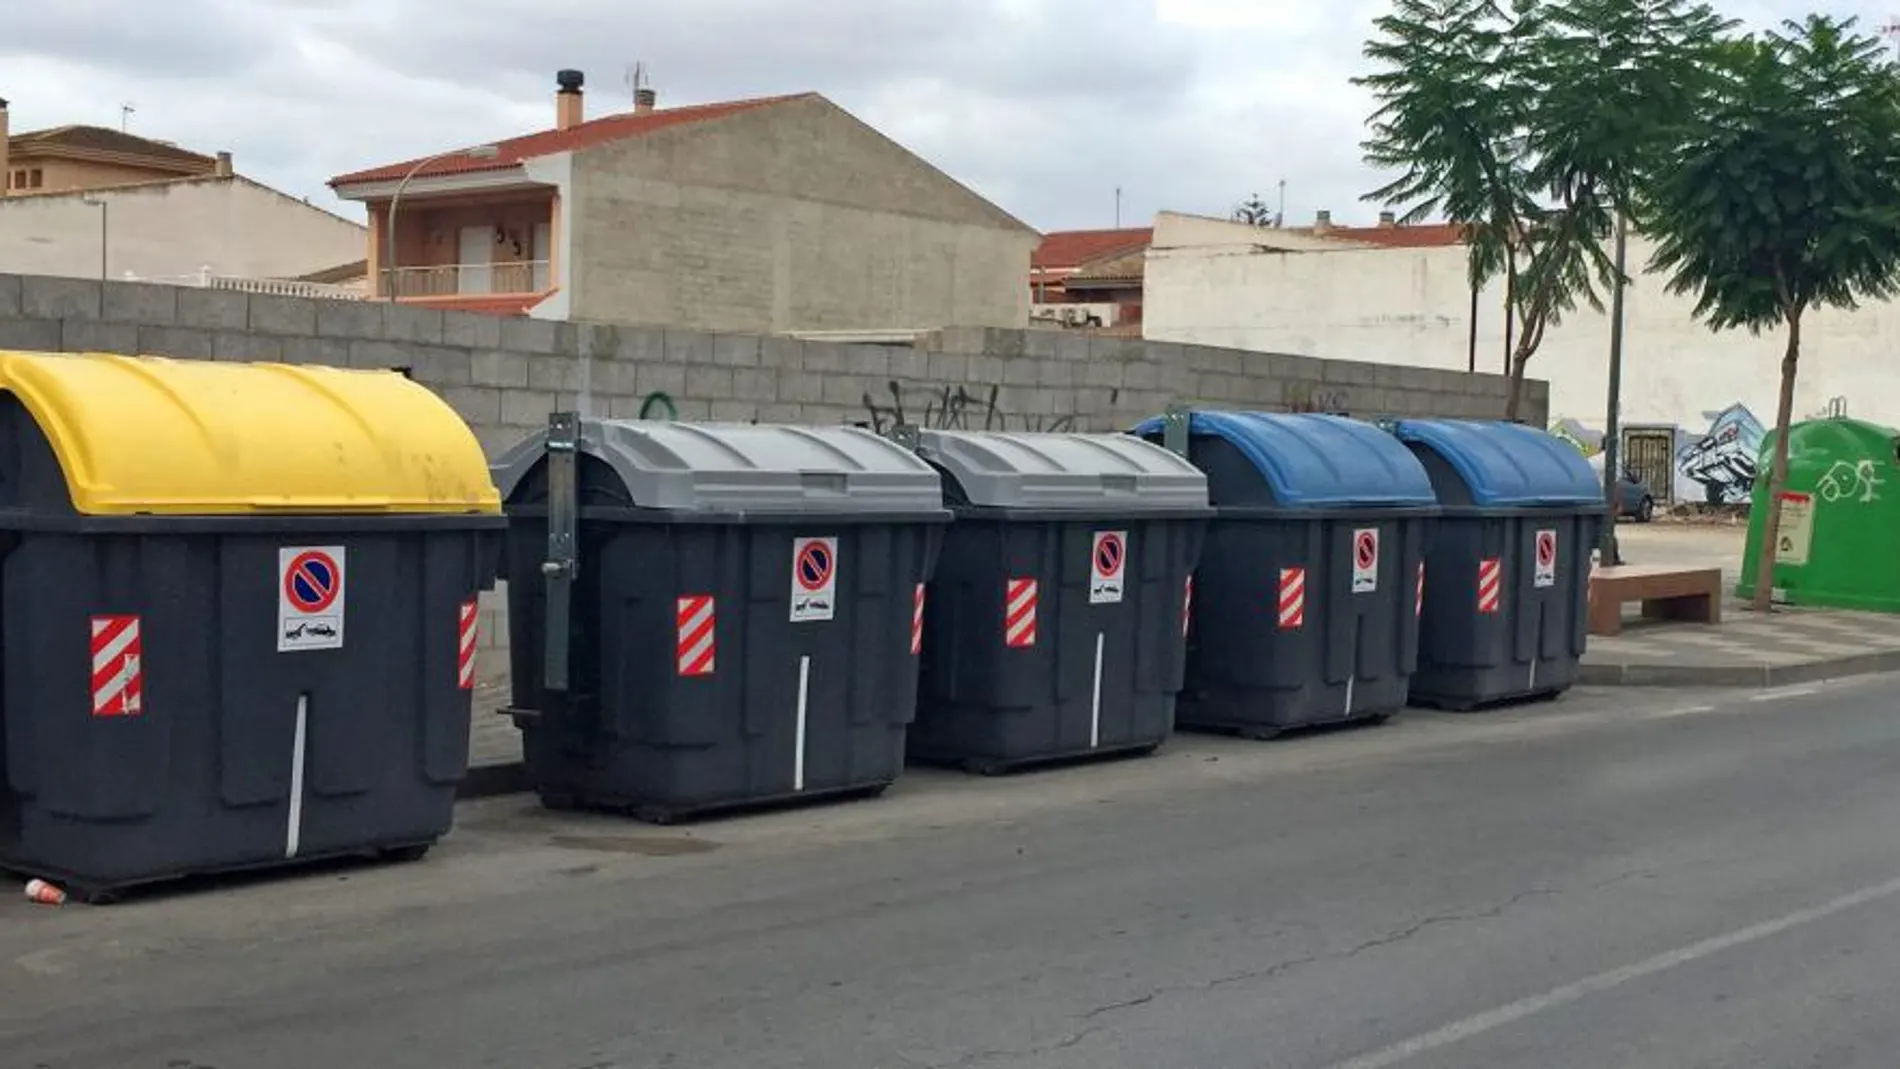 Las deposiciones de basura en los contenedores están fijadas de 21 a 22.30 horas en verano